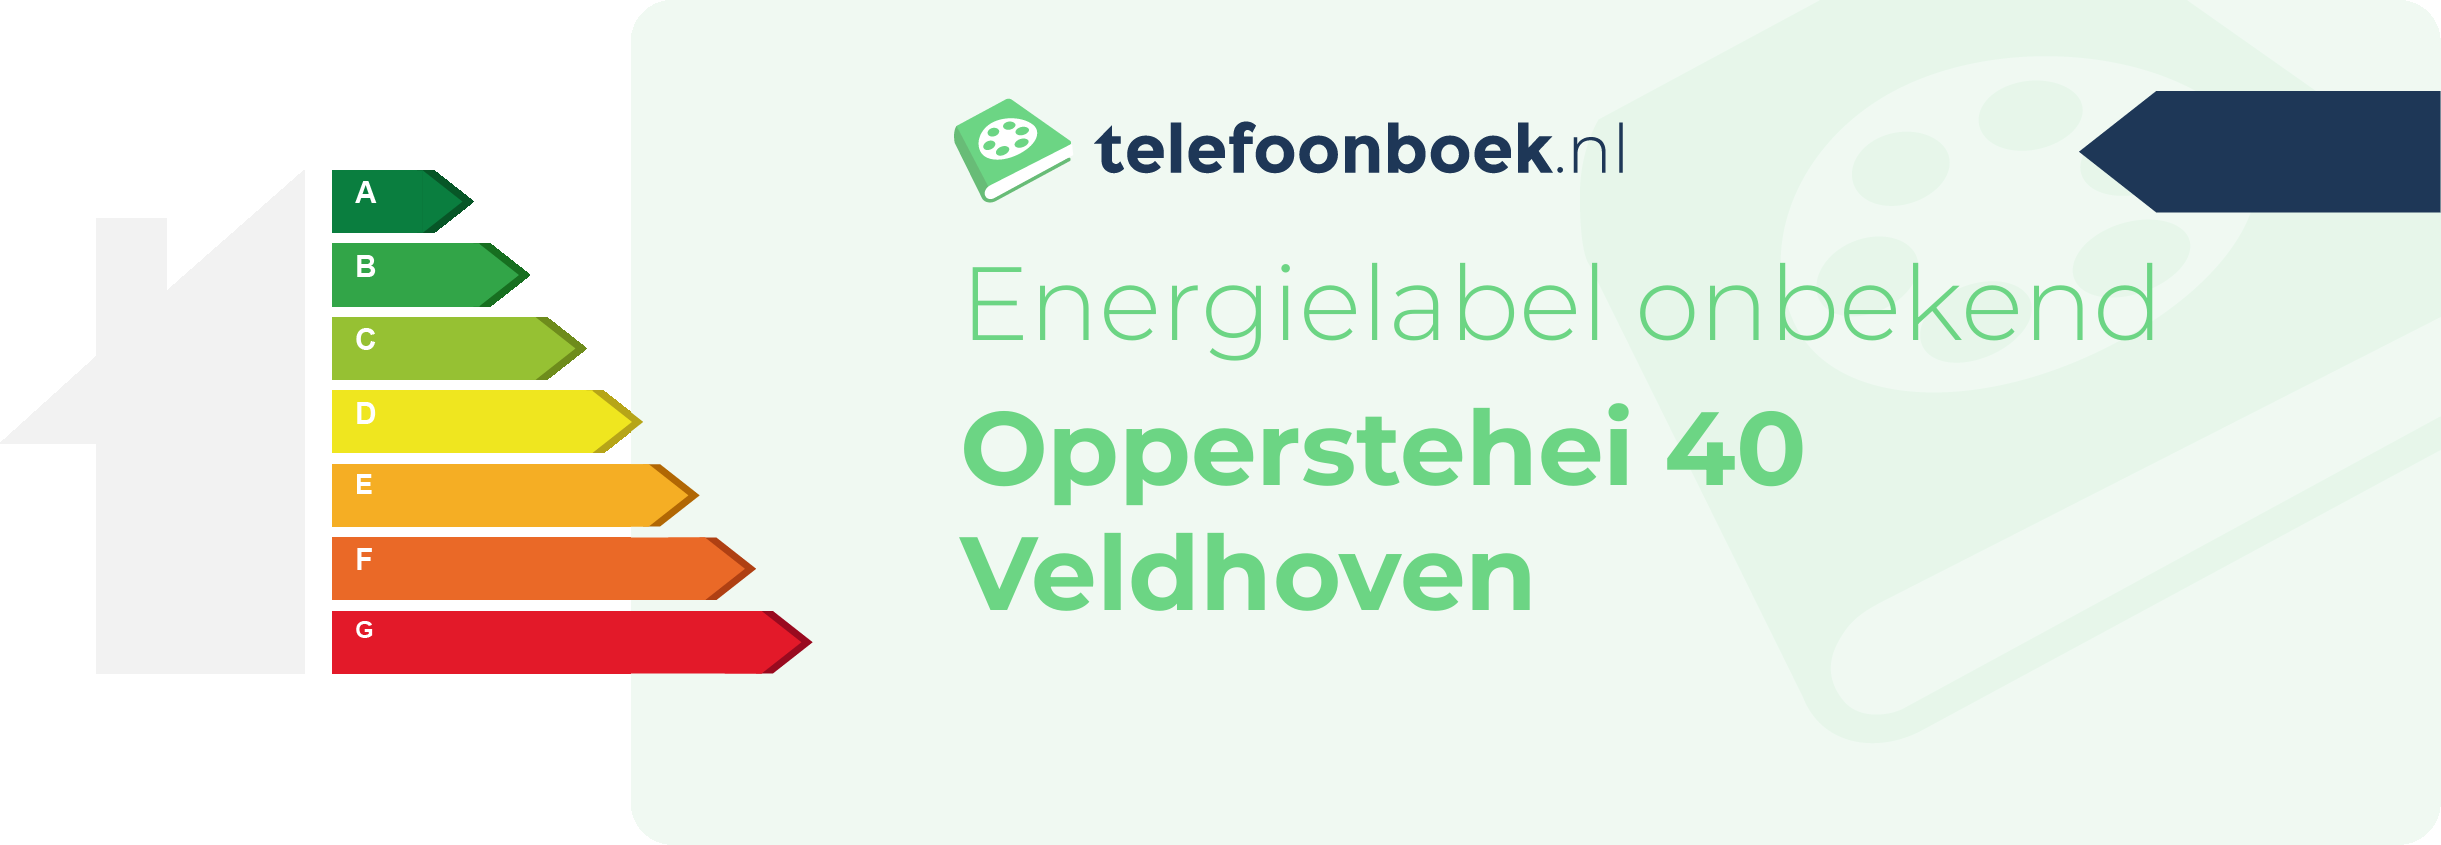 Energielabel Opperstehei 40 Veldhoven